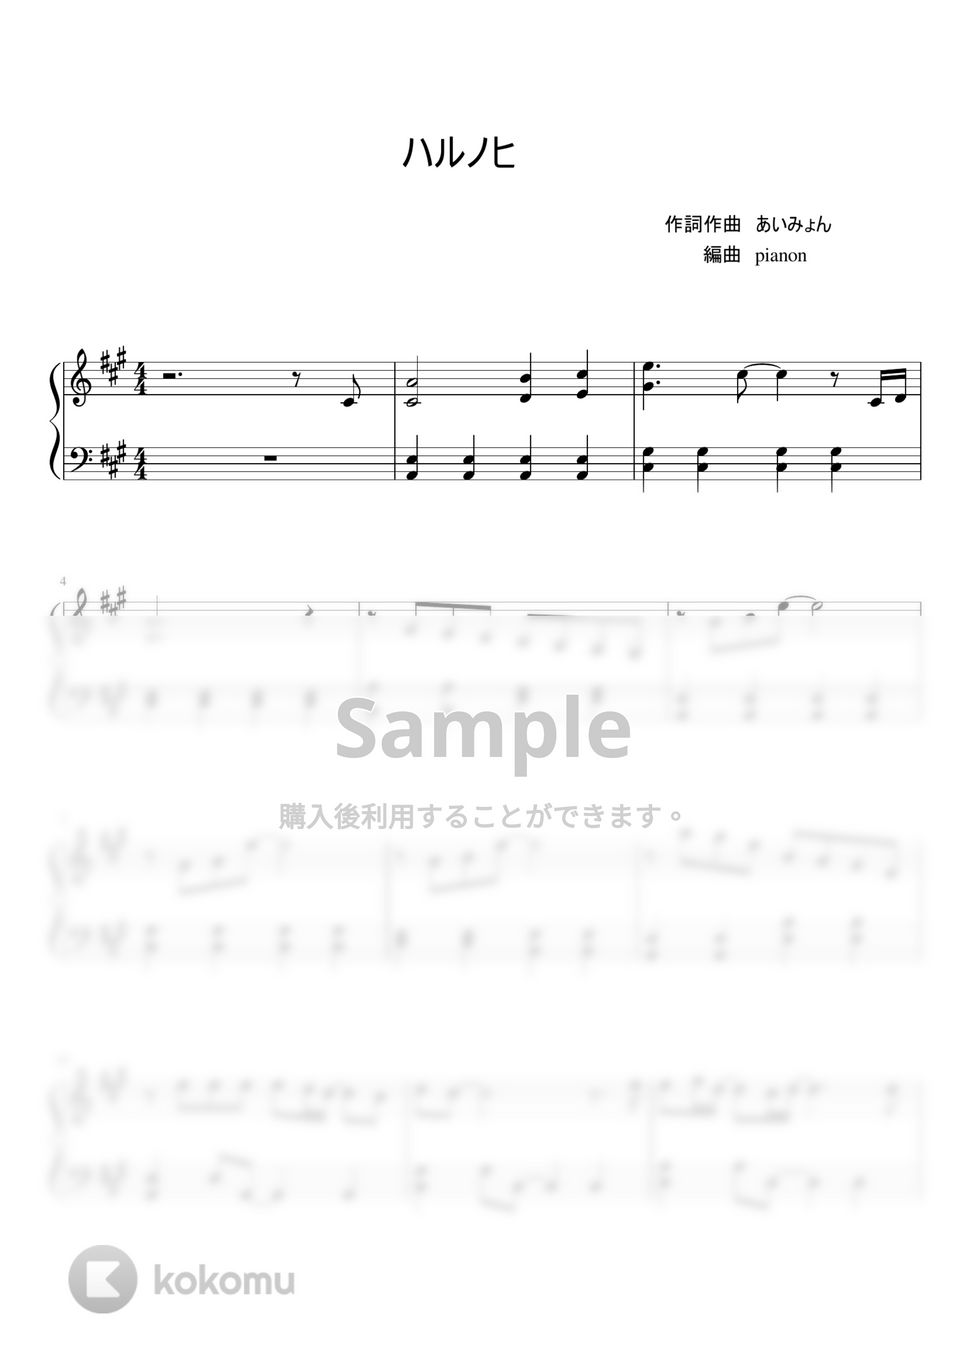 あいみょん - ハルノヒ by pianon楽譜